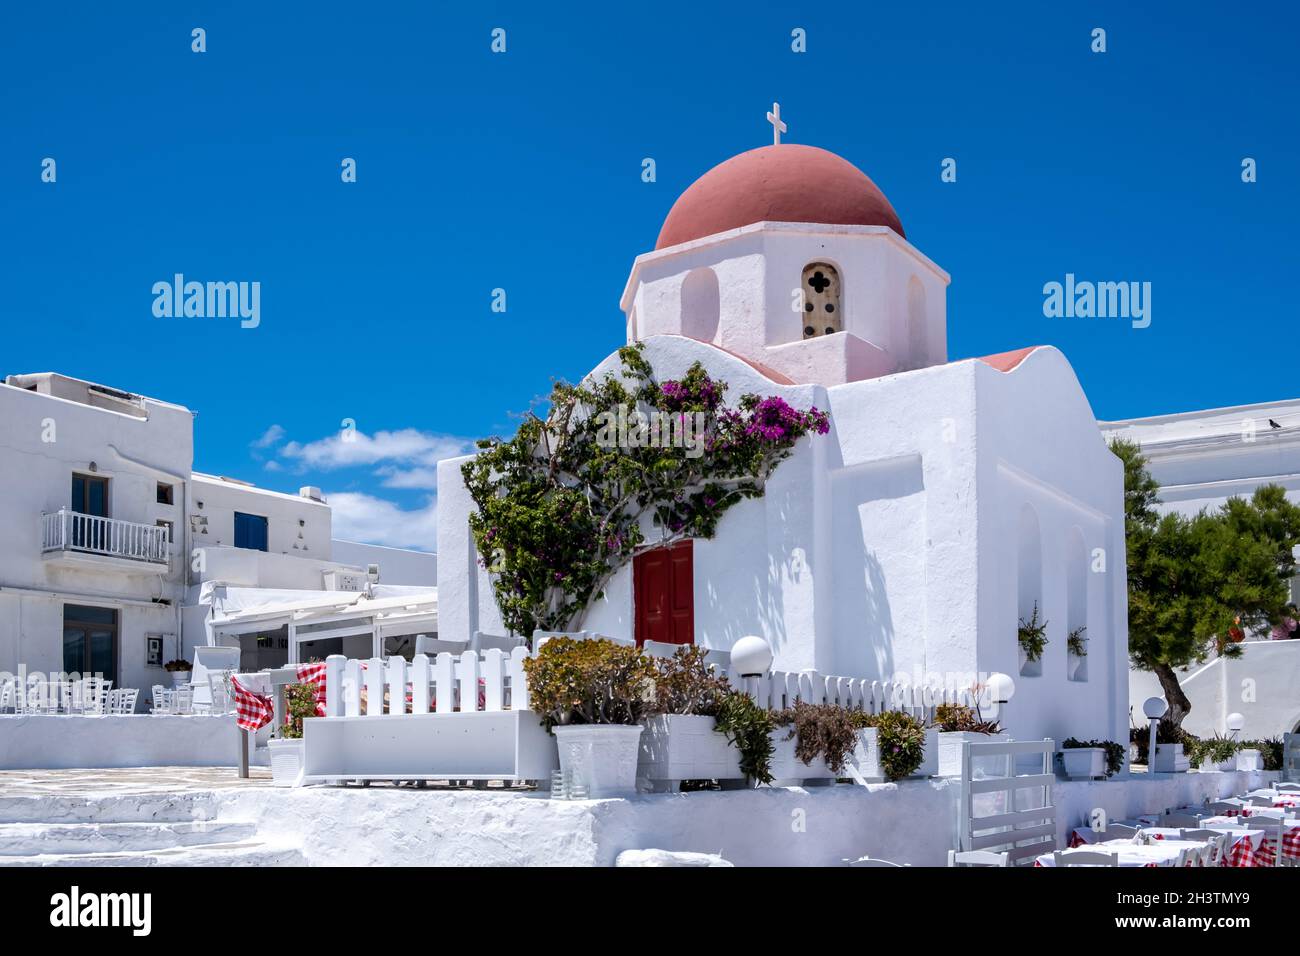 Chapelle blanche sur ciel bleu clair.Église à dôme rouge dans la ville de Chora, île de Mykonos, Cyclades.Grèce.Tables et chaises de taverne en plein air, jour ensoleillé Banque D'Images